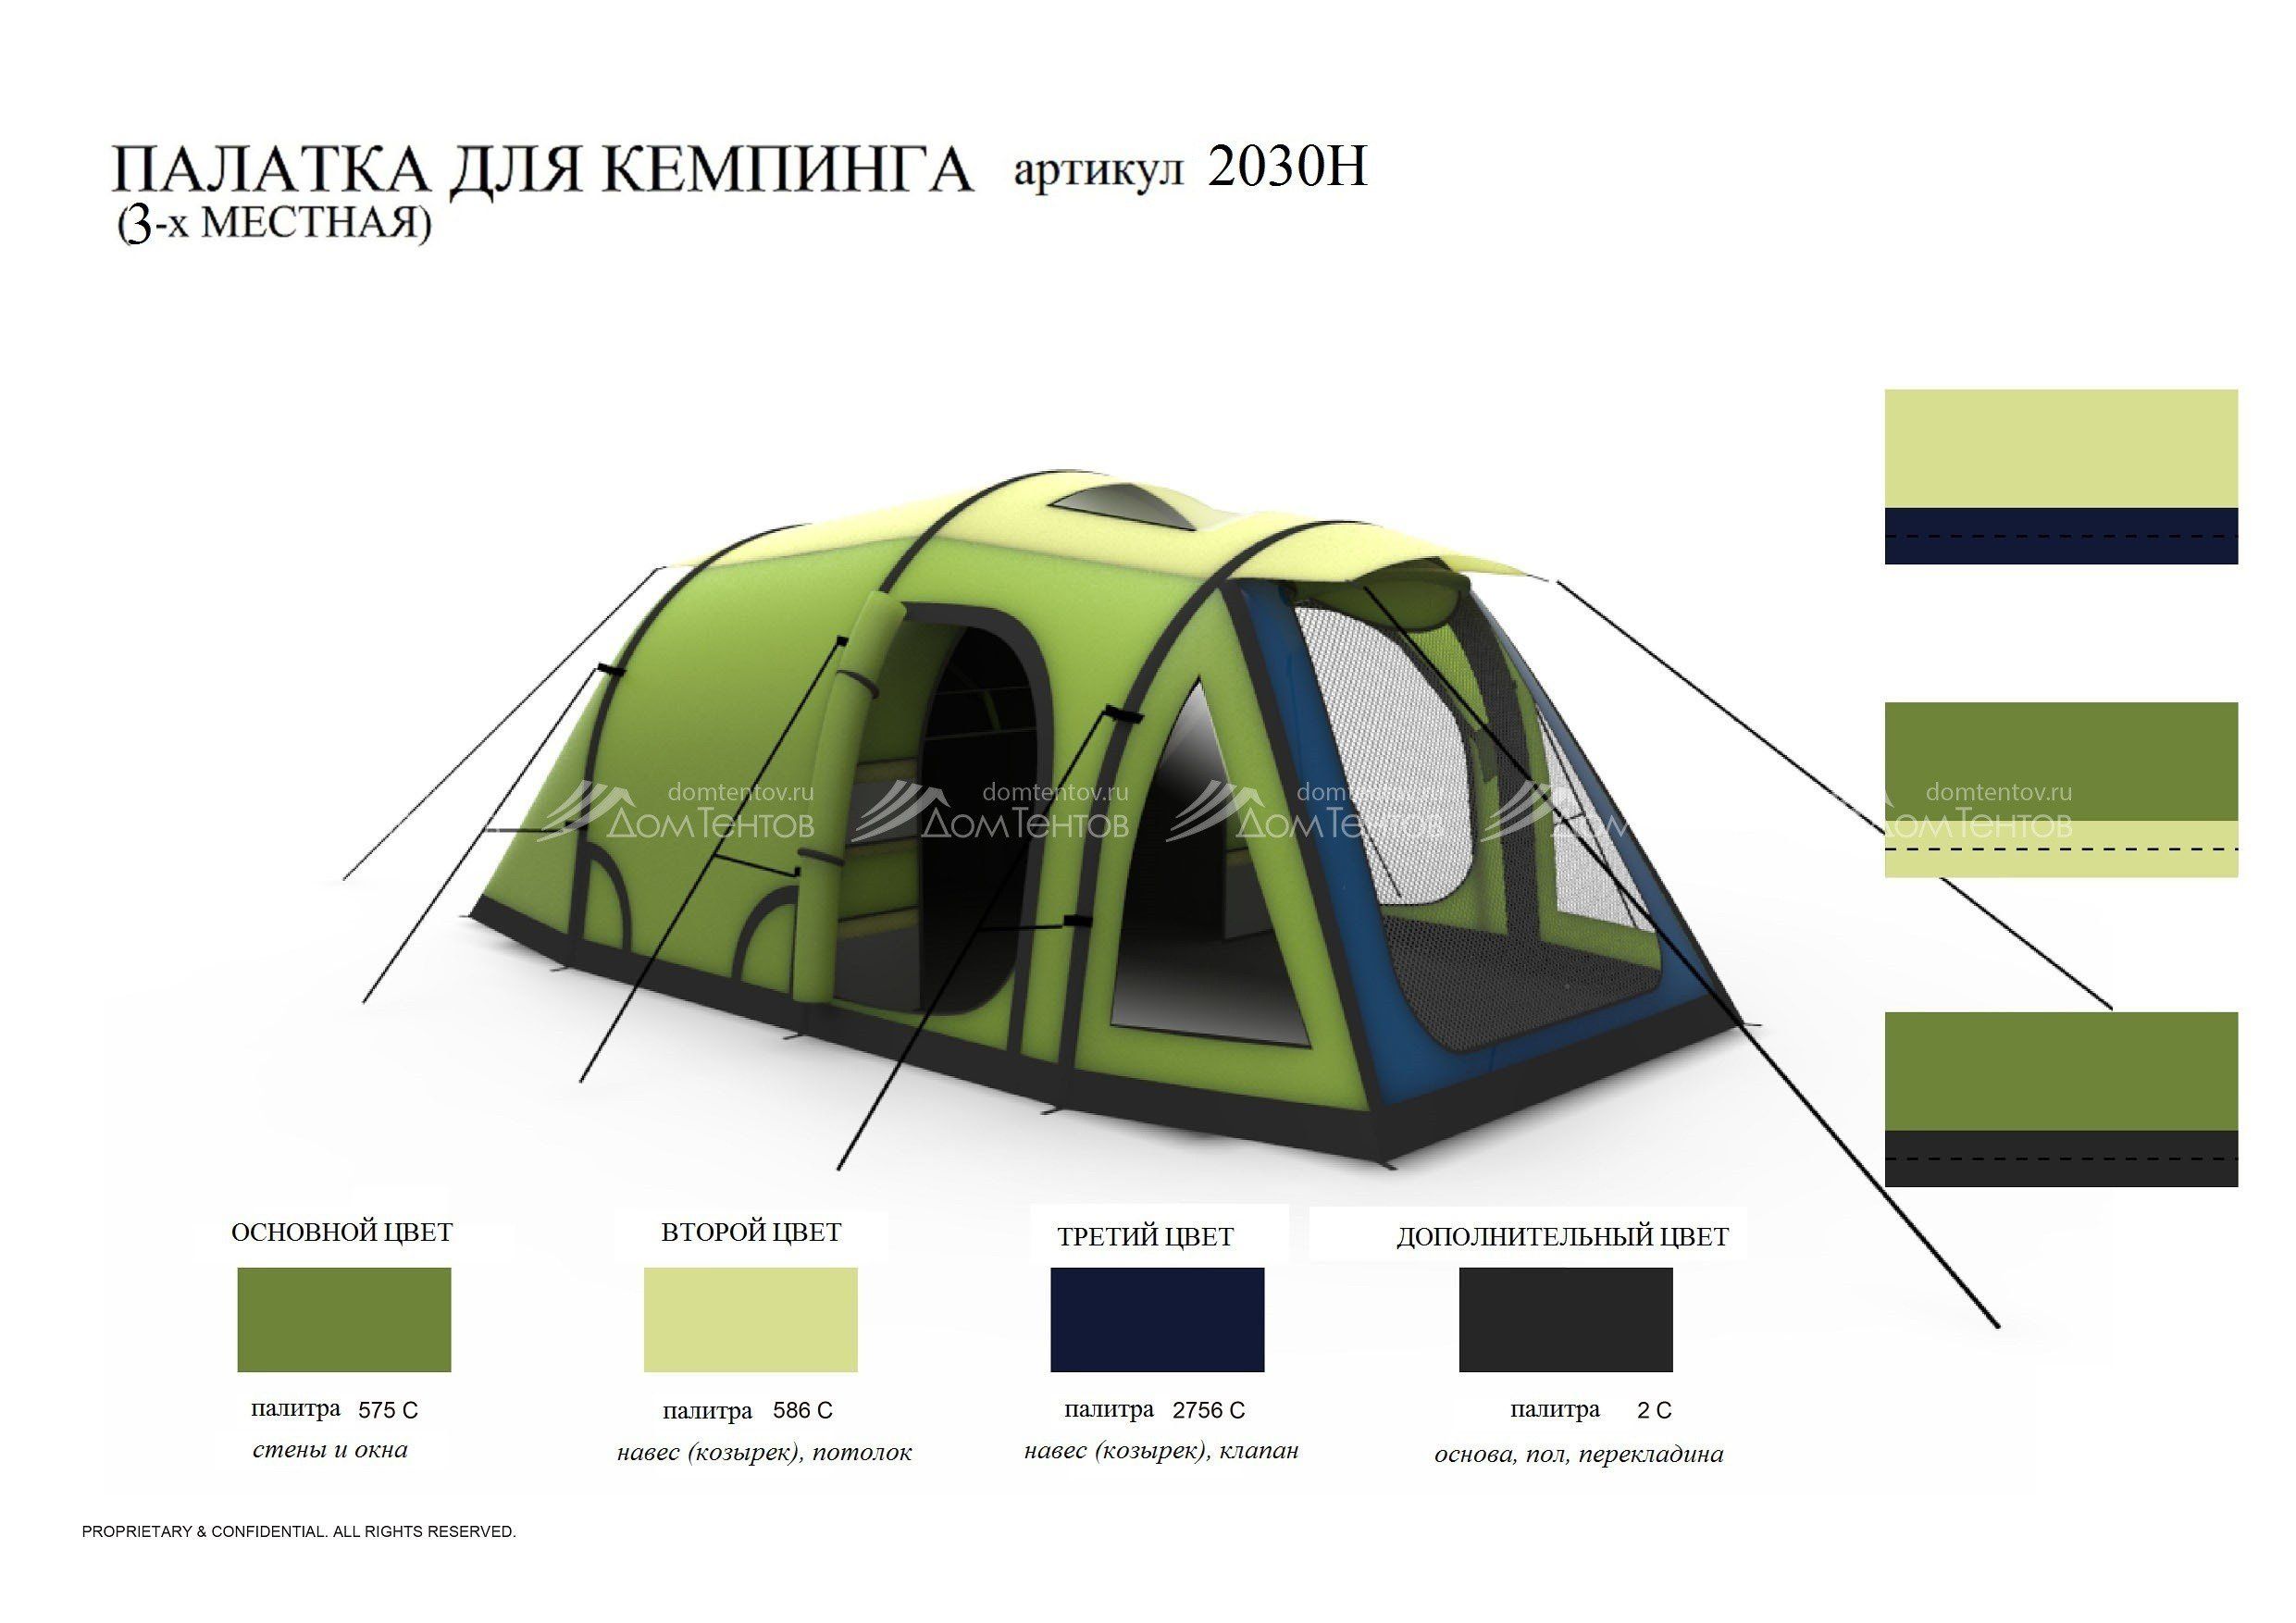 Палатки для отдыха с надувным каркасом 3-х местные артикул 2030H по .